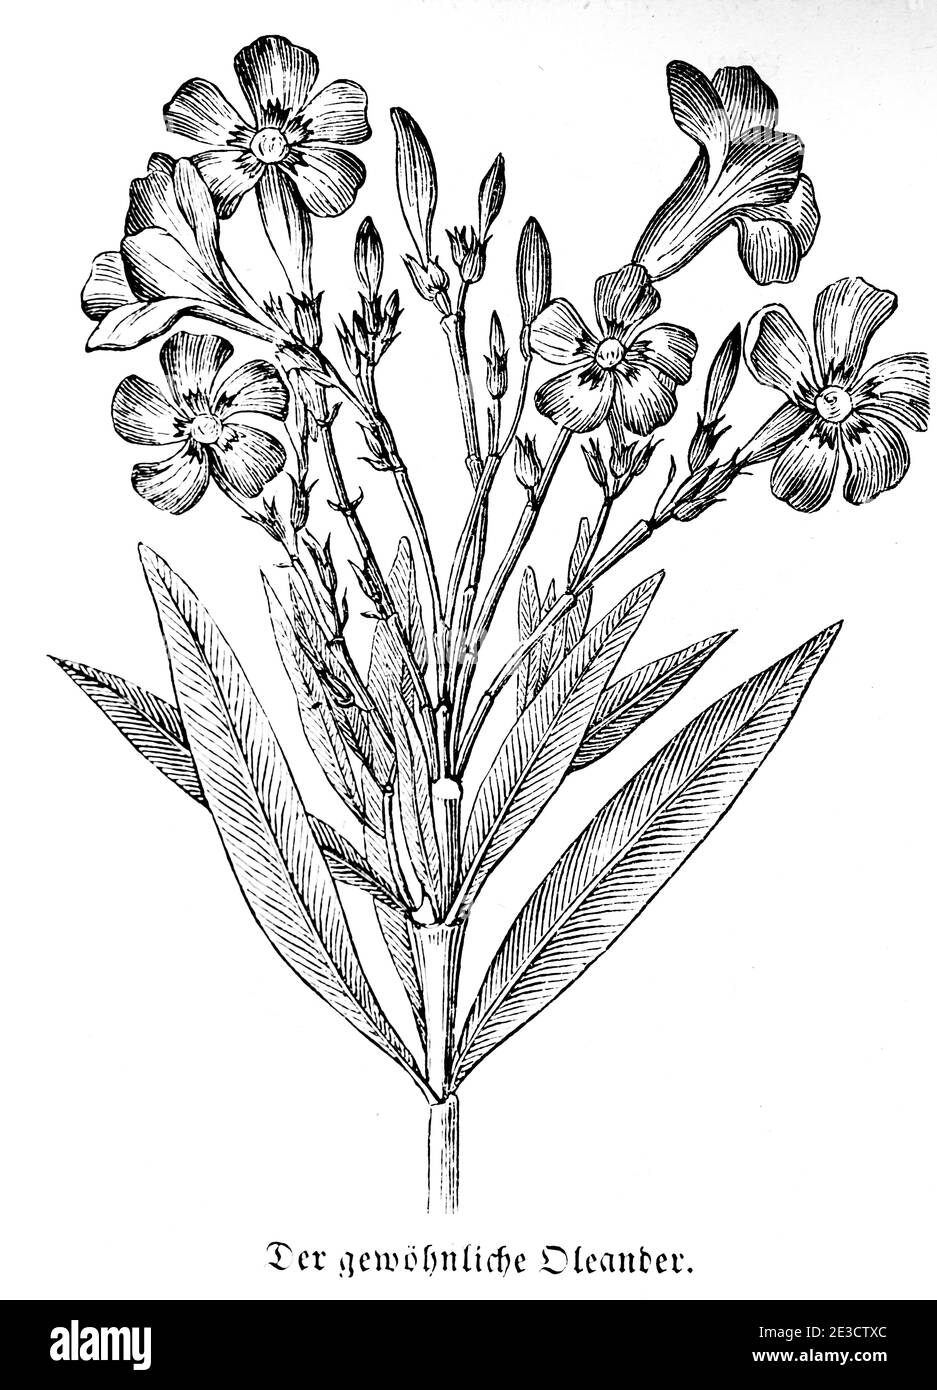 Gewöhnlicher Oleander (Nerium oleander), Swiss Calendar with information about poisonous plants and corresponding motives, St. Gallen Switzerland 1853 Stock Photo